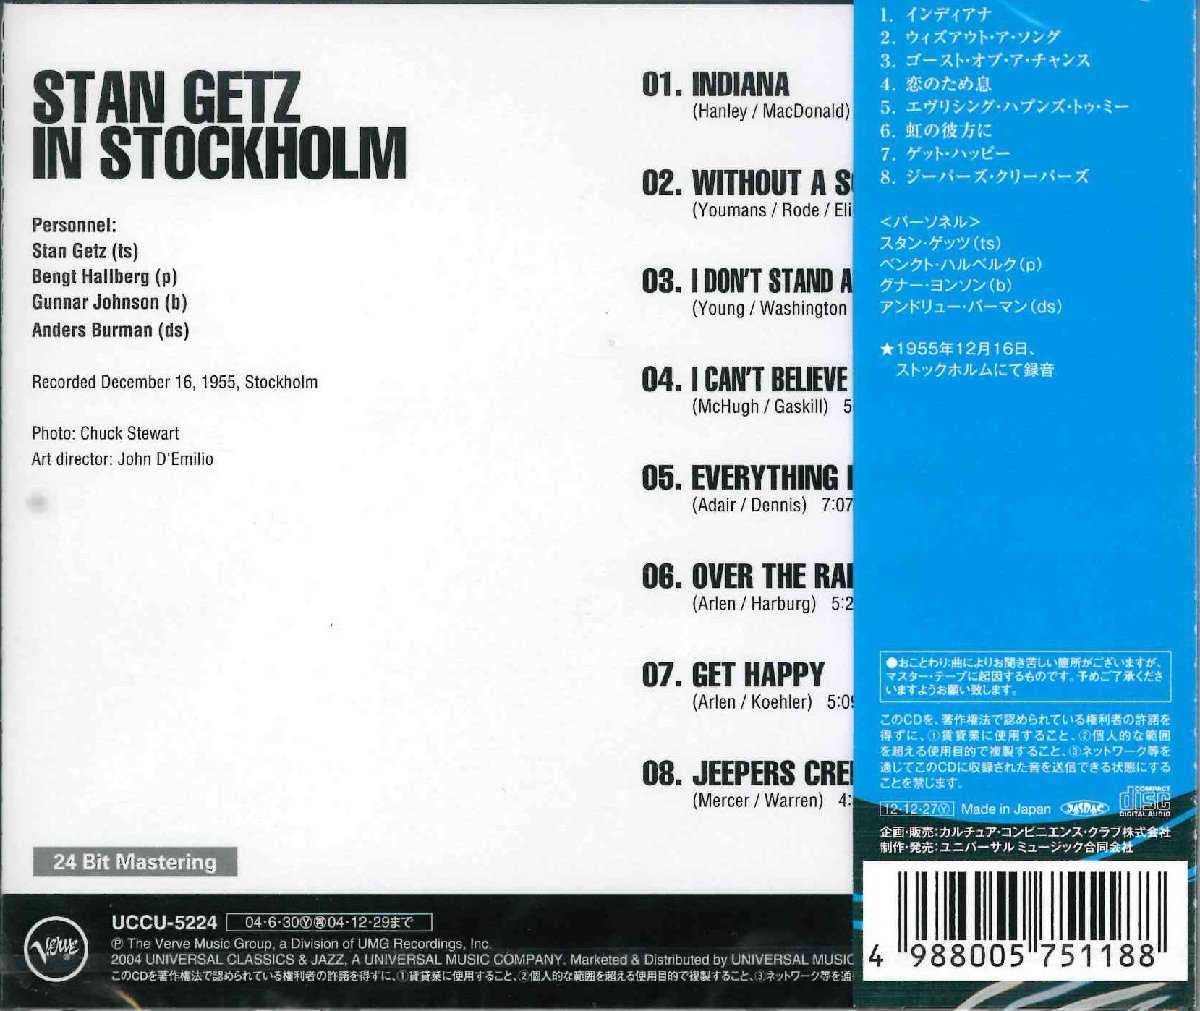 【未開封】[CD] スタン・ゲッツ / スタン・ゲッツ・イン・ストックホルム PROZ-1056 [CD0101]_画像2